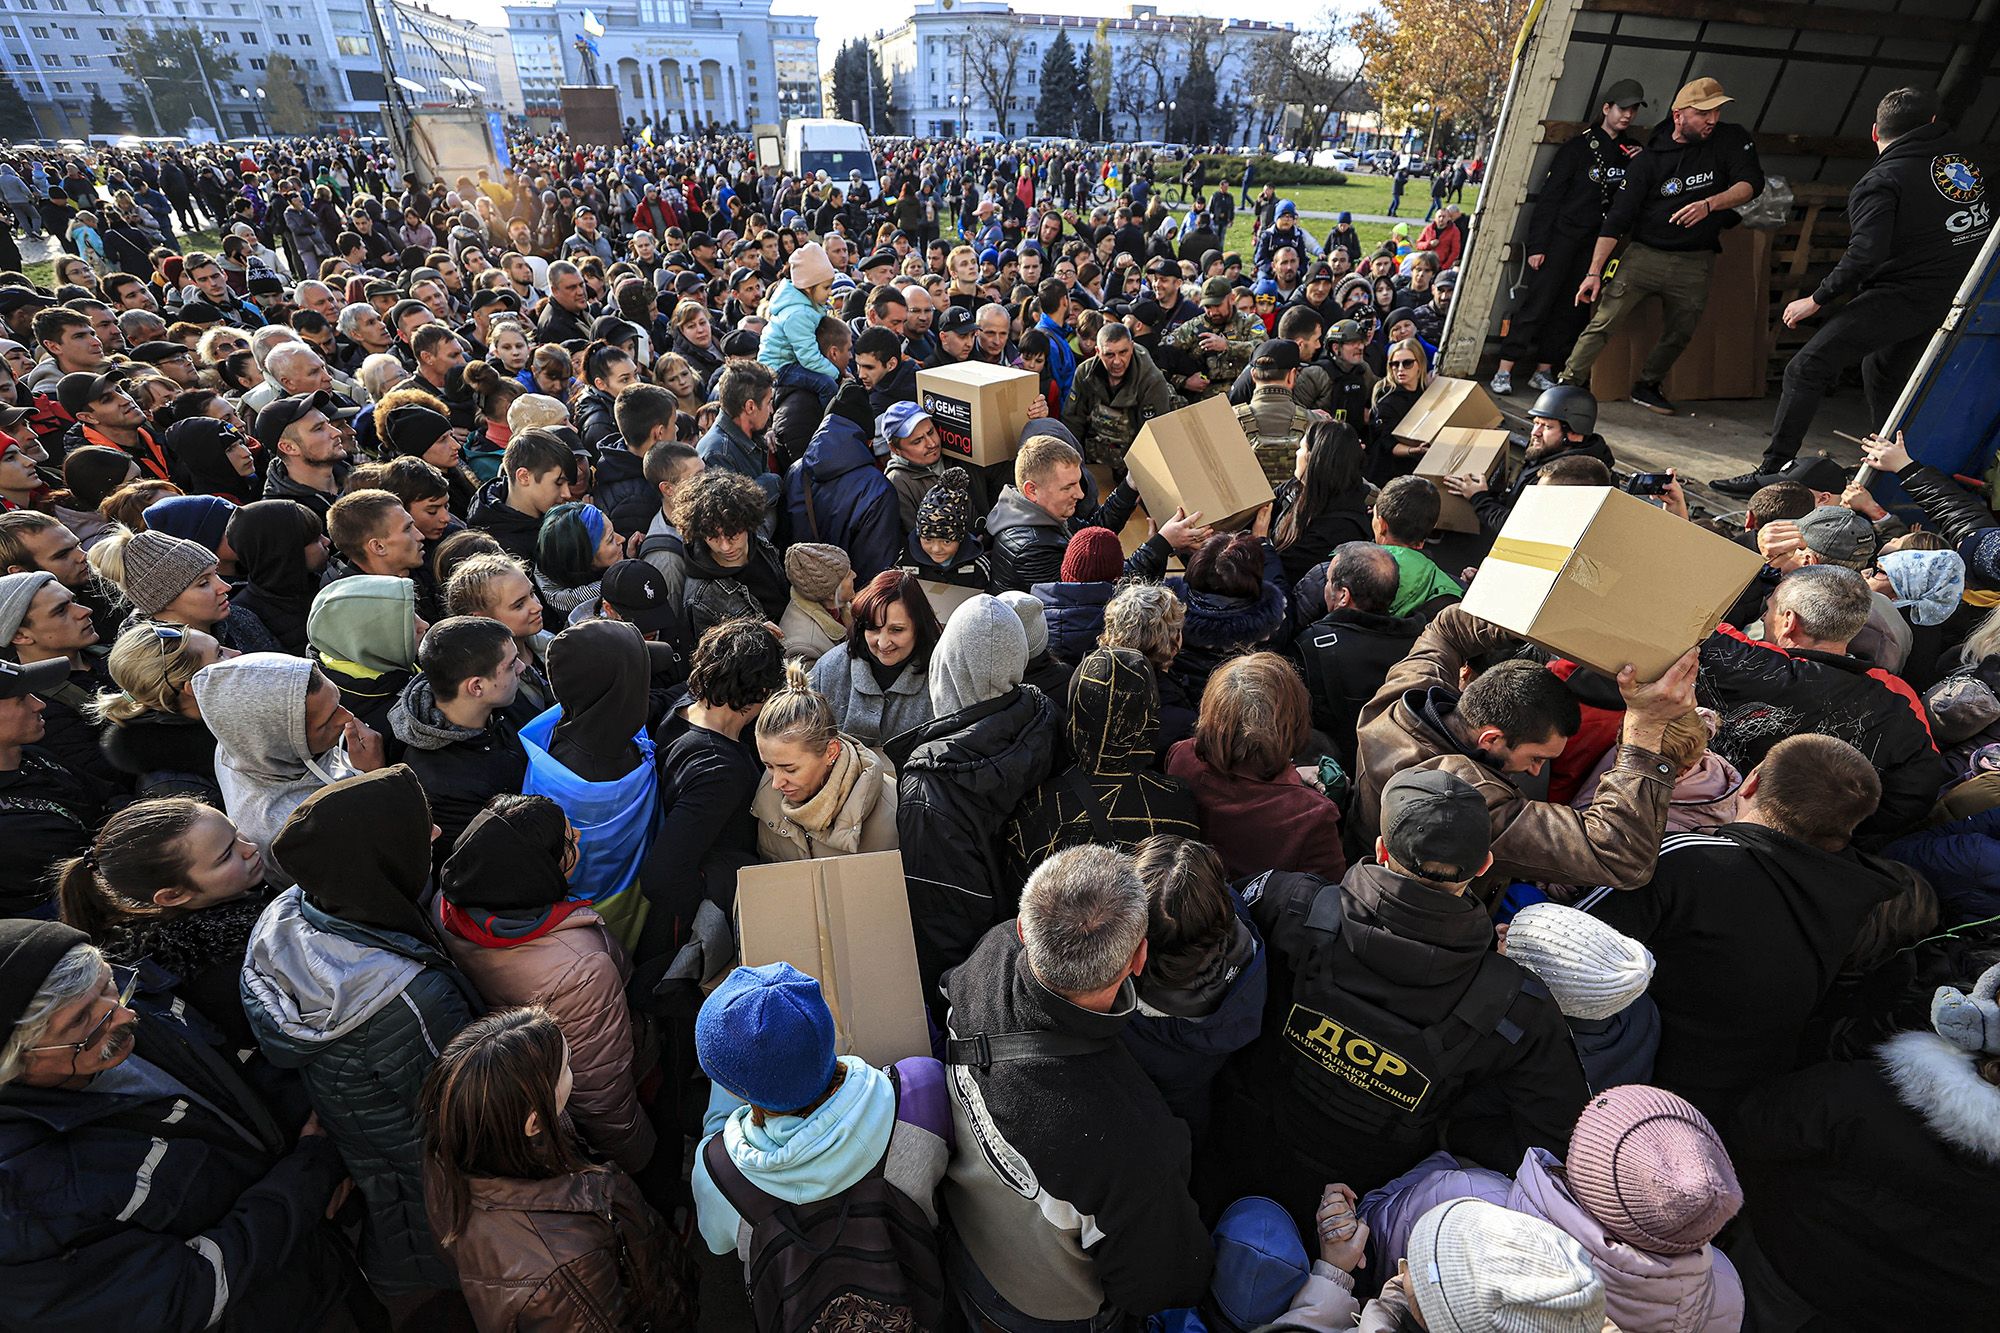 Ukraine thông báo sơ tán tự nguyện người dân khỏi thành phố Kherson, Mykolaiv